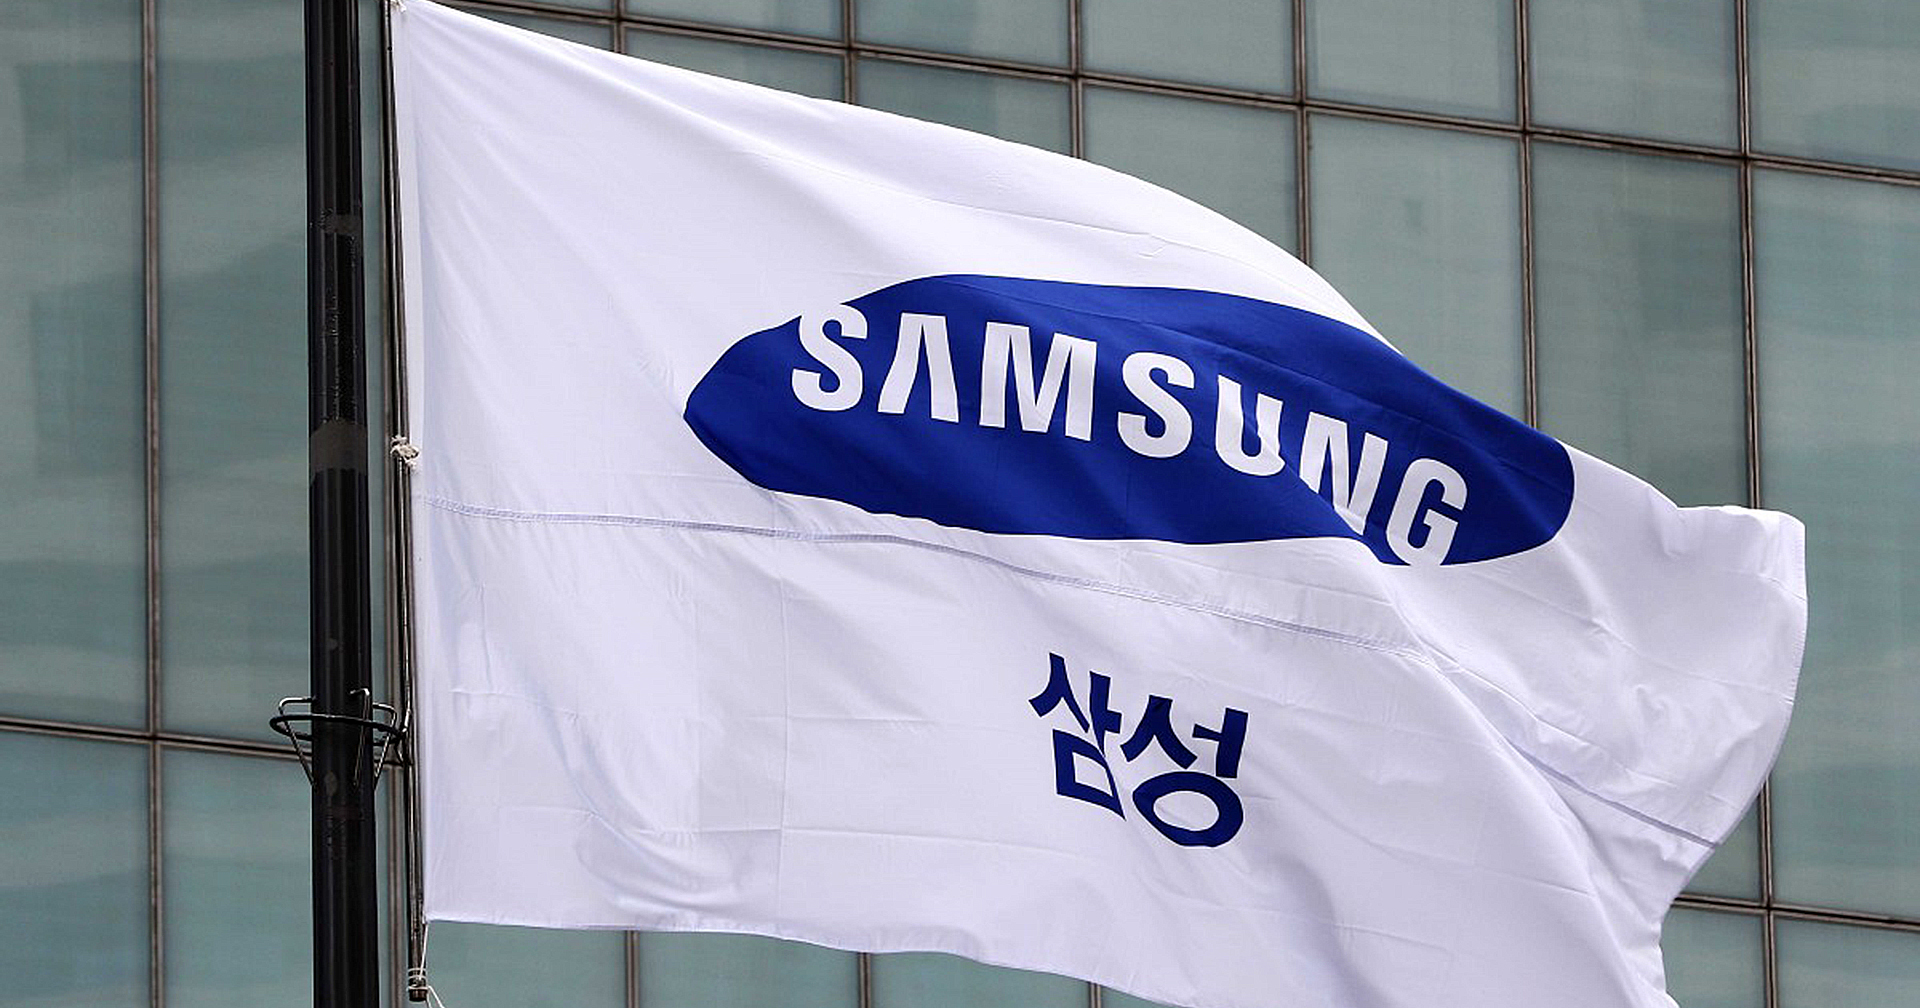 Samsung ทำสถิติความเร็ว 5G สูงถึง 1.75 Gbps ที่ระยะทางไกล 10 กิโลเมตร